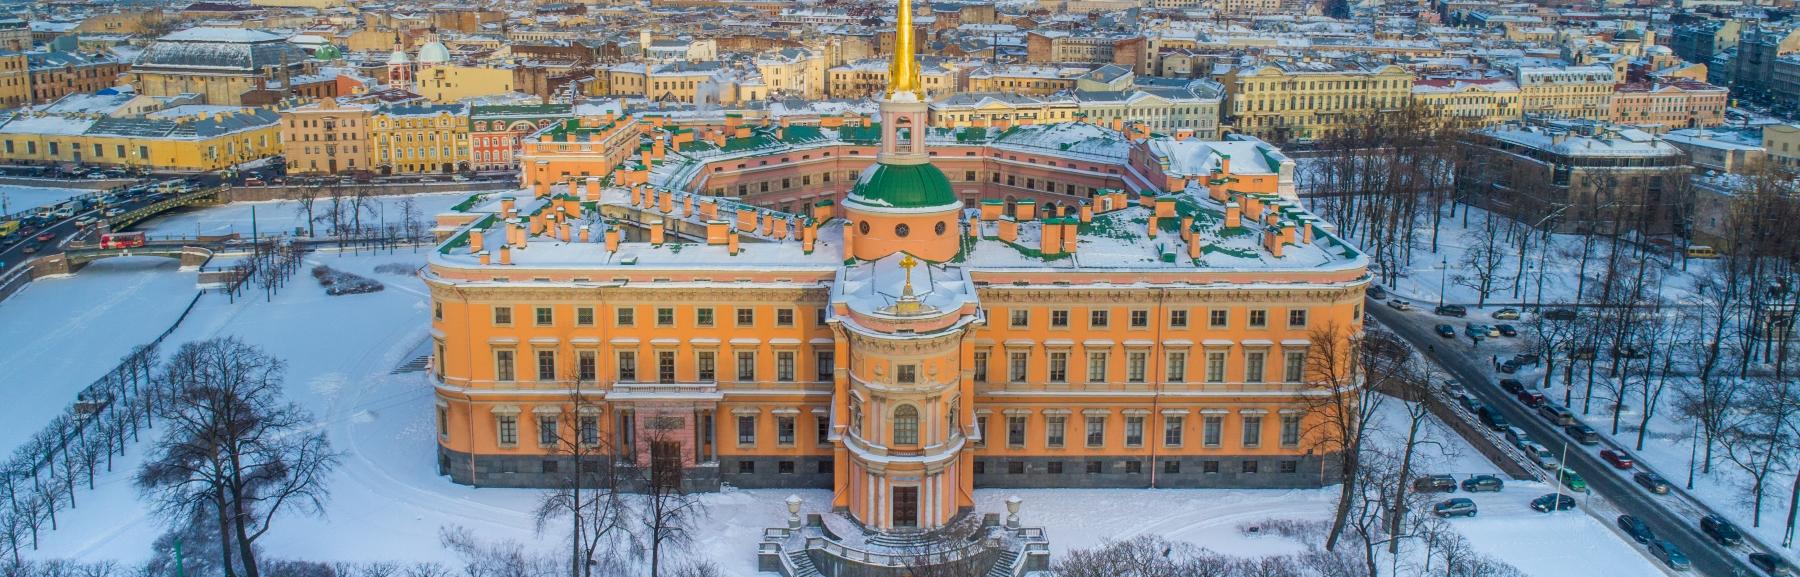 Бесплатное посещение Михайловского замка для льготных категорий граждан в 2023 году